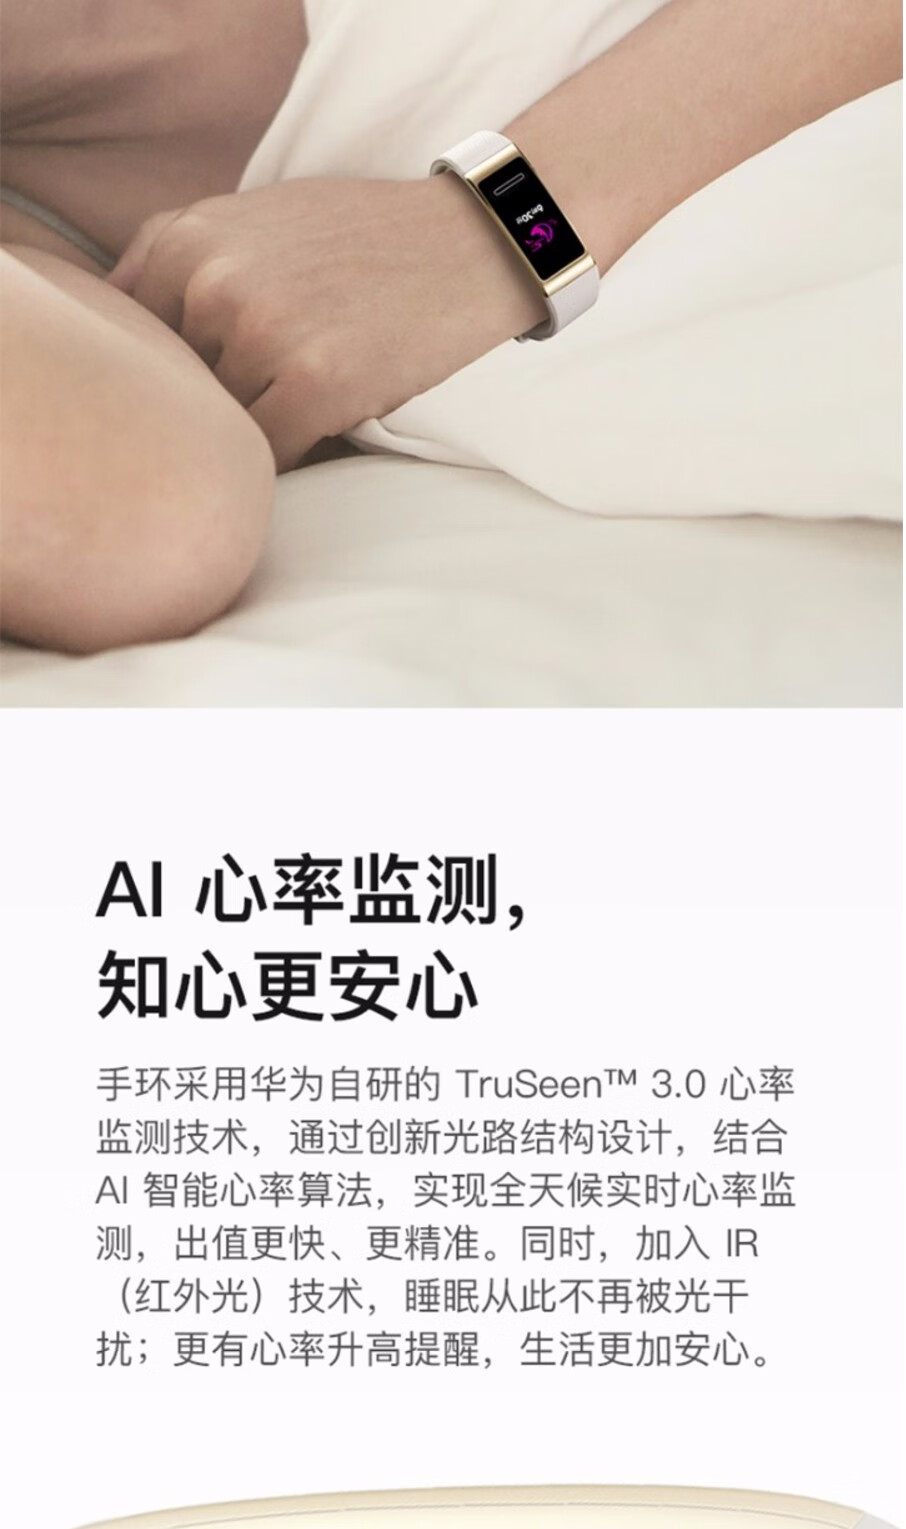 咨询有喜华为手环3pro运动智能彩屏手环心率睡眠健康监测nfc移动支付